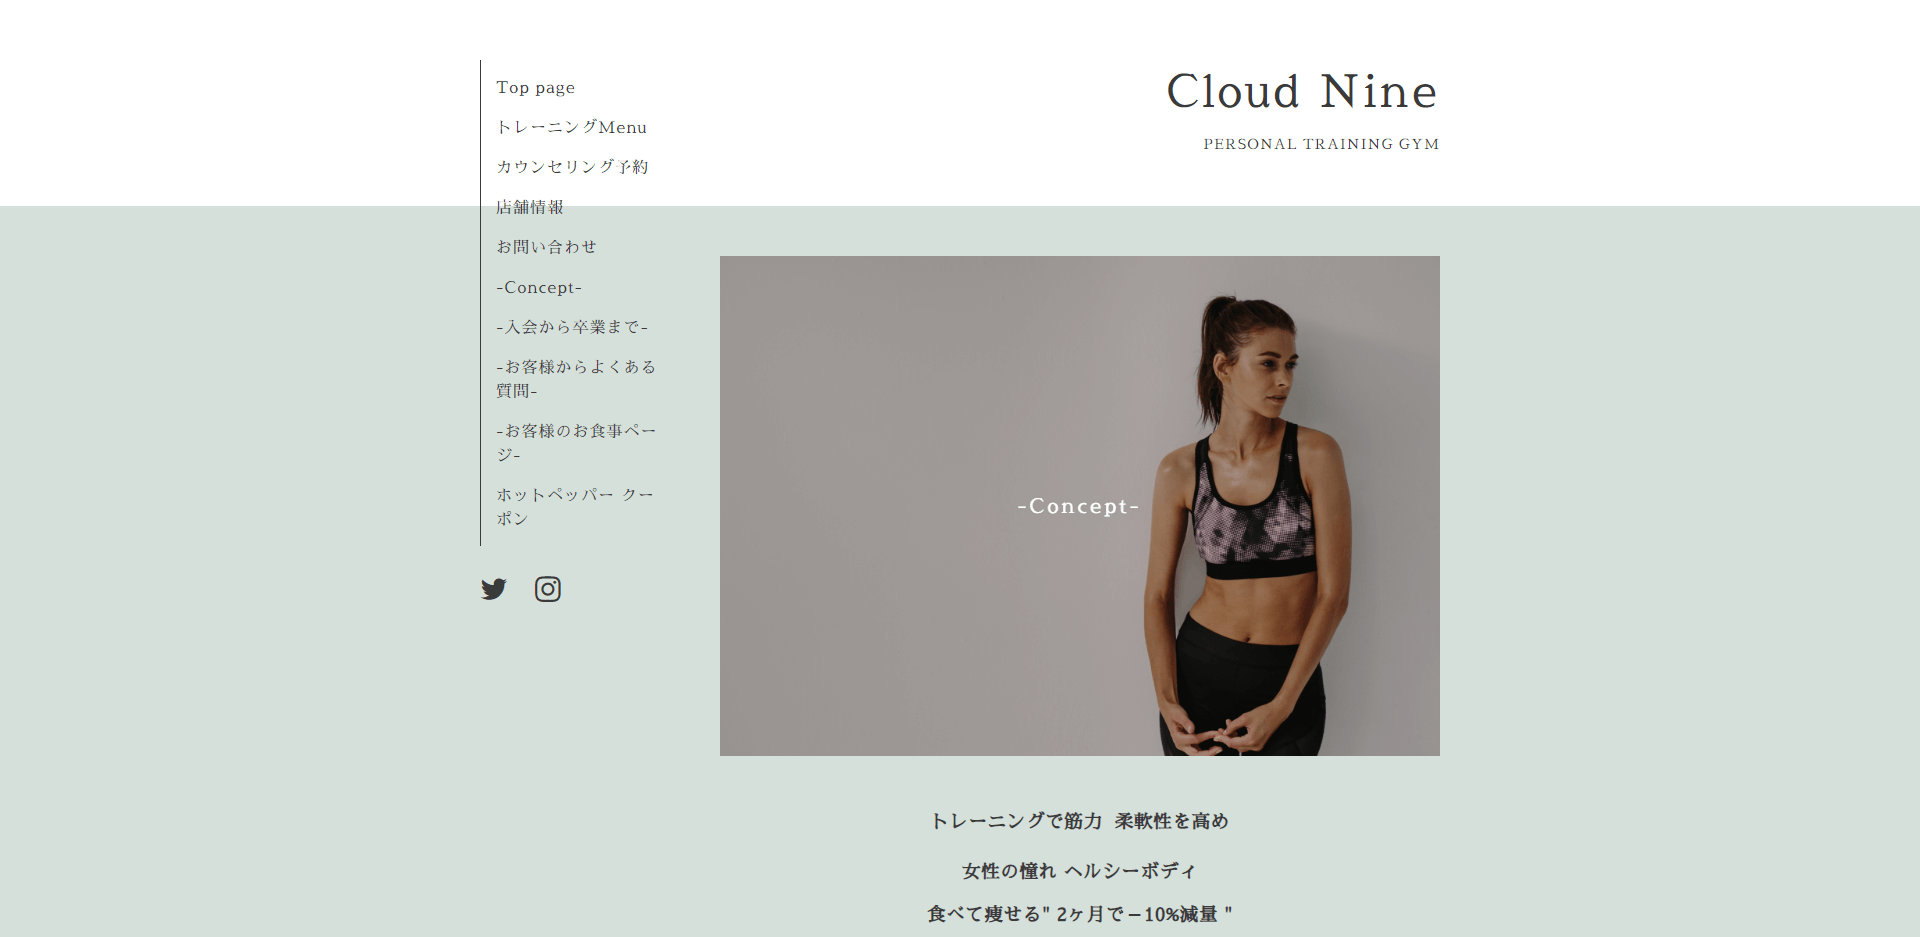 所沢エリアでおすすめのパーソナルトレーニングジム「CloudNine」